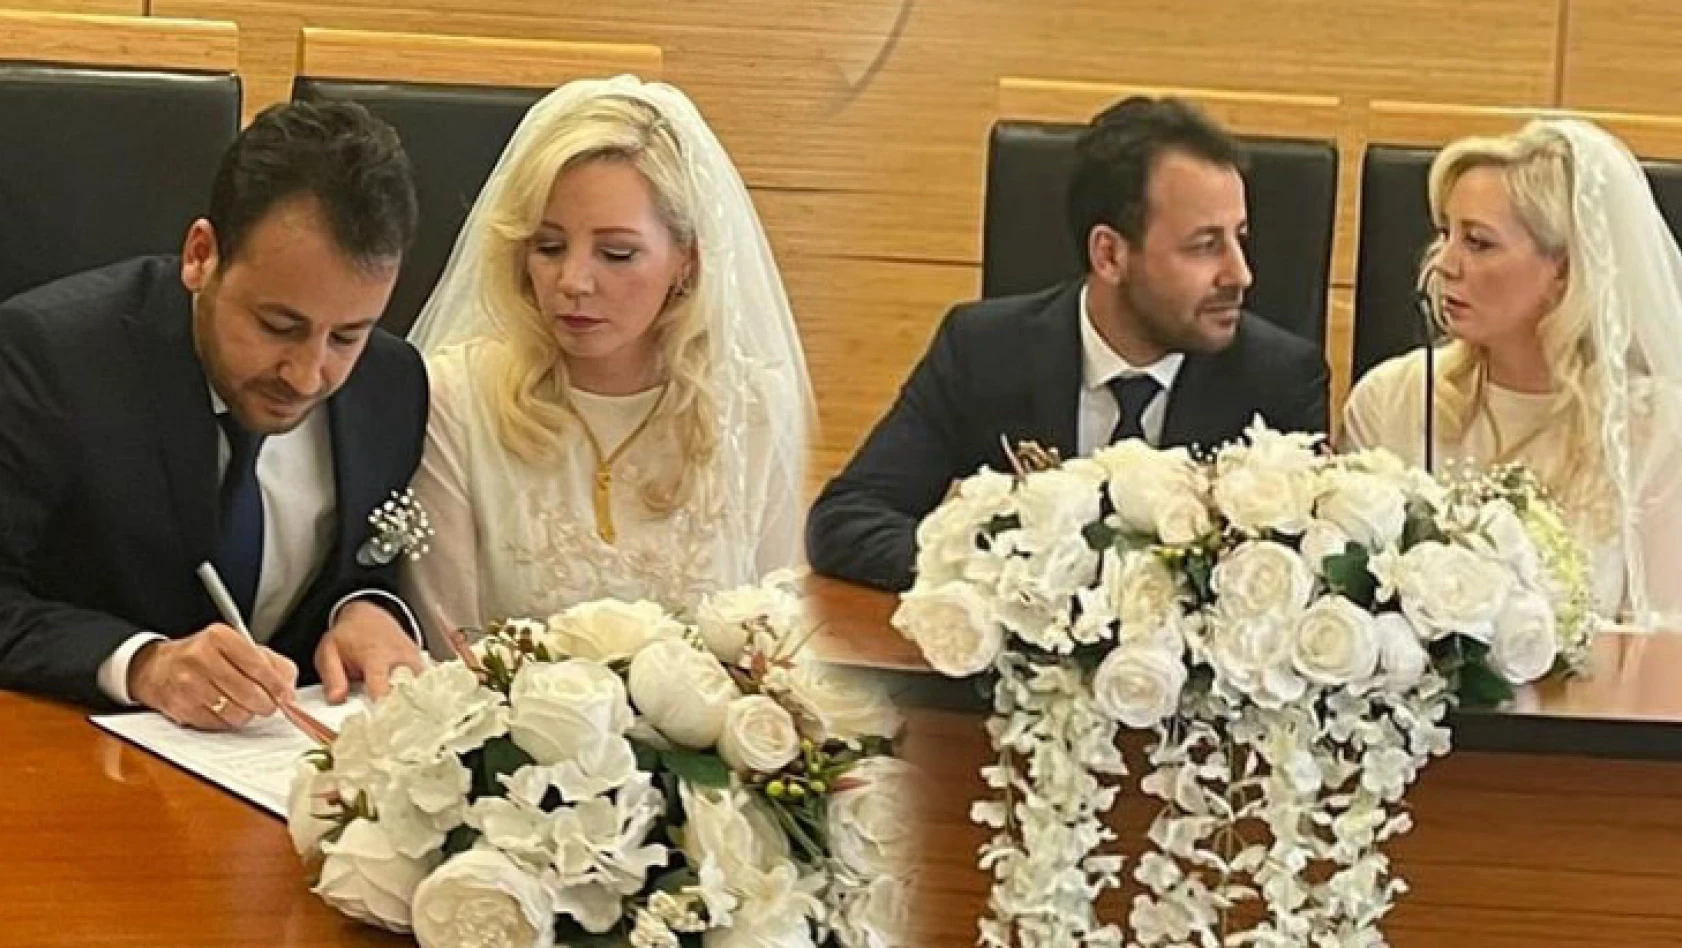 Gazeteci İdris Emen ile Claire Stewart evlendi